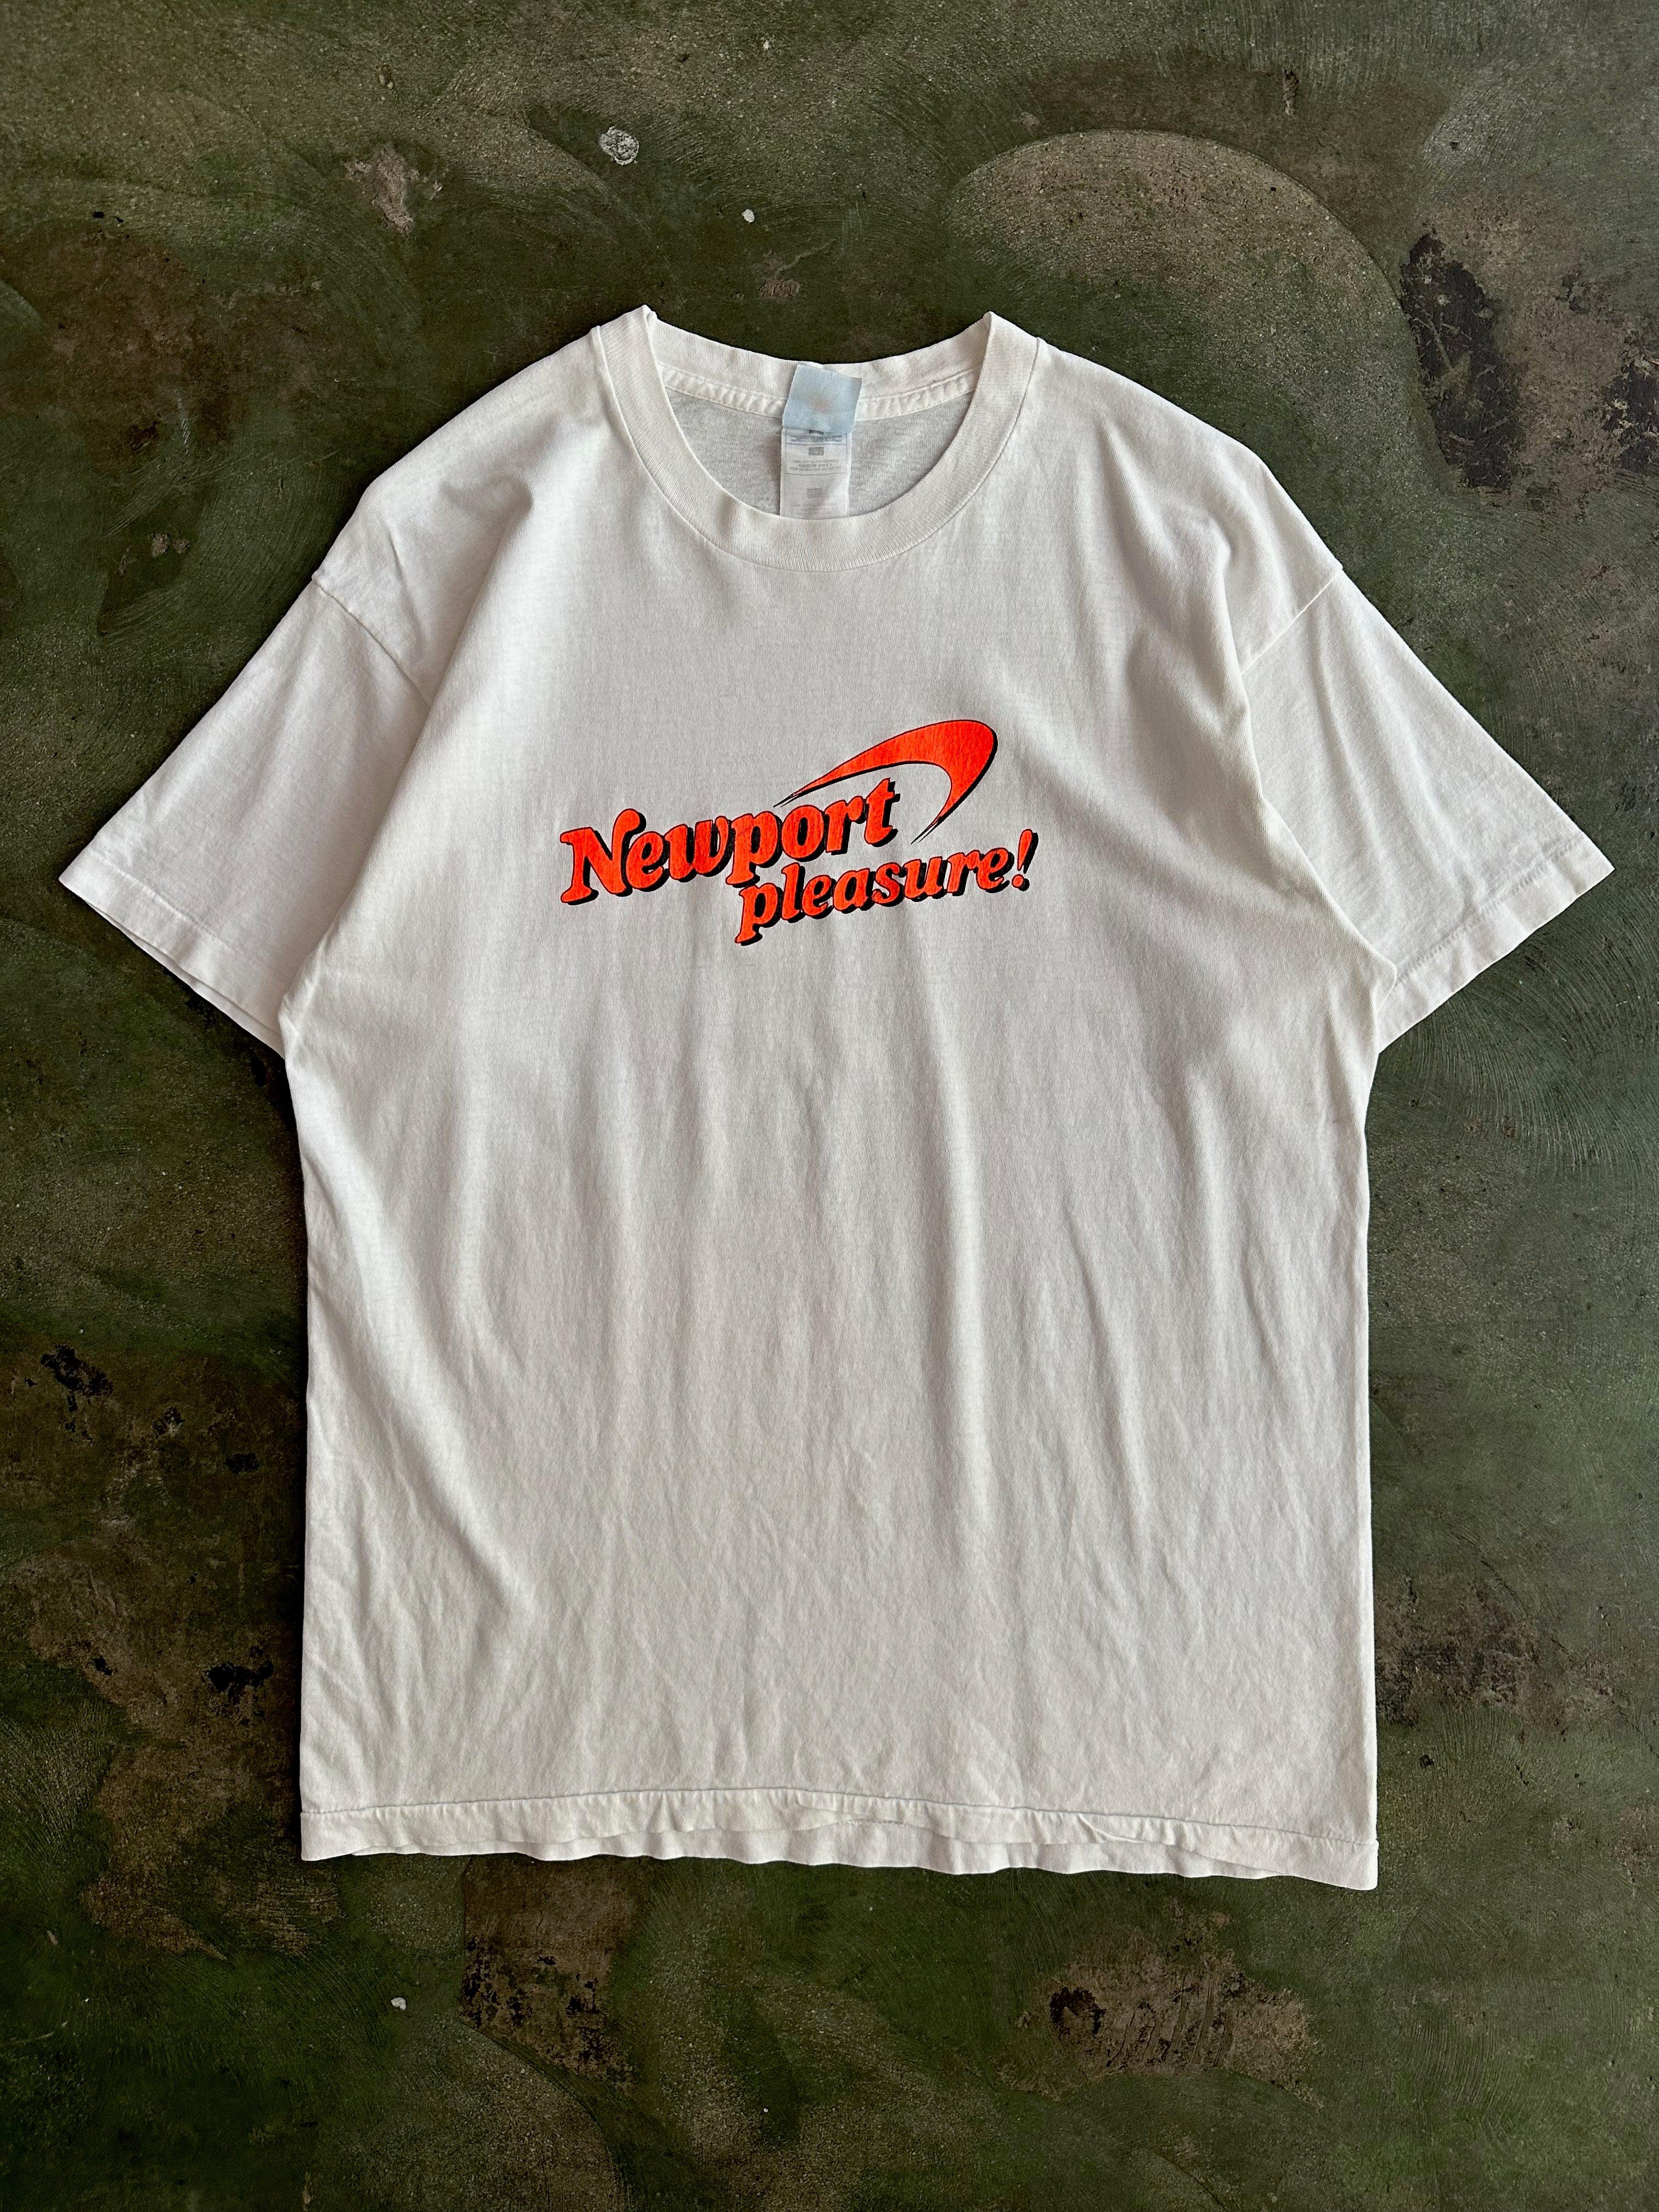 Vintage 90s Newport Cigarettes 'Pleasure!' T-Shirt (L)-T-SHIRT-MISCELLANEOUS-SIZE L-Room On Fire